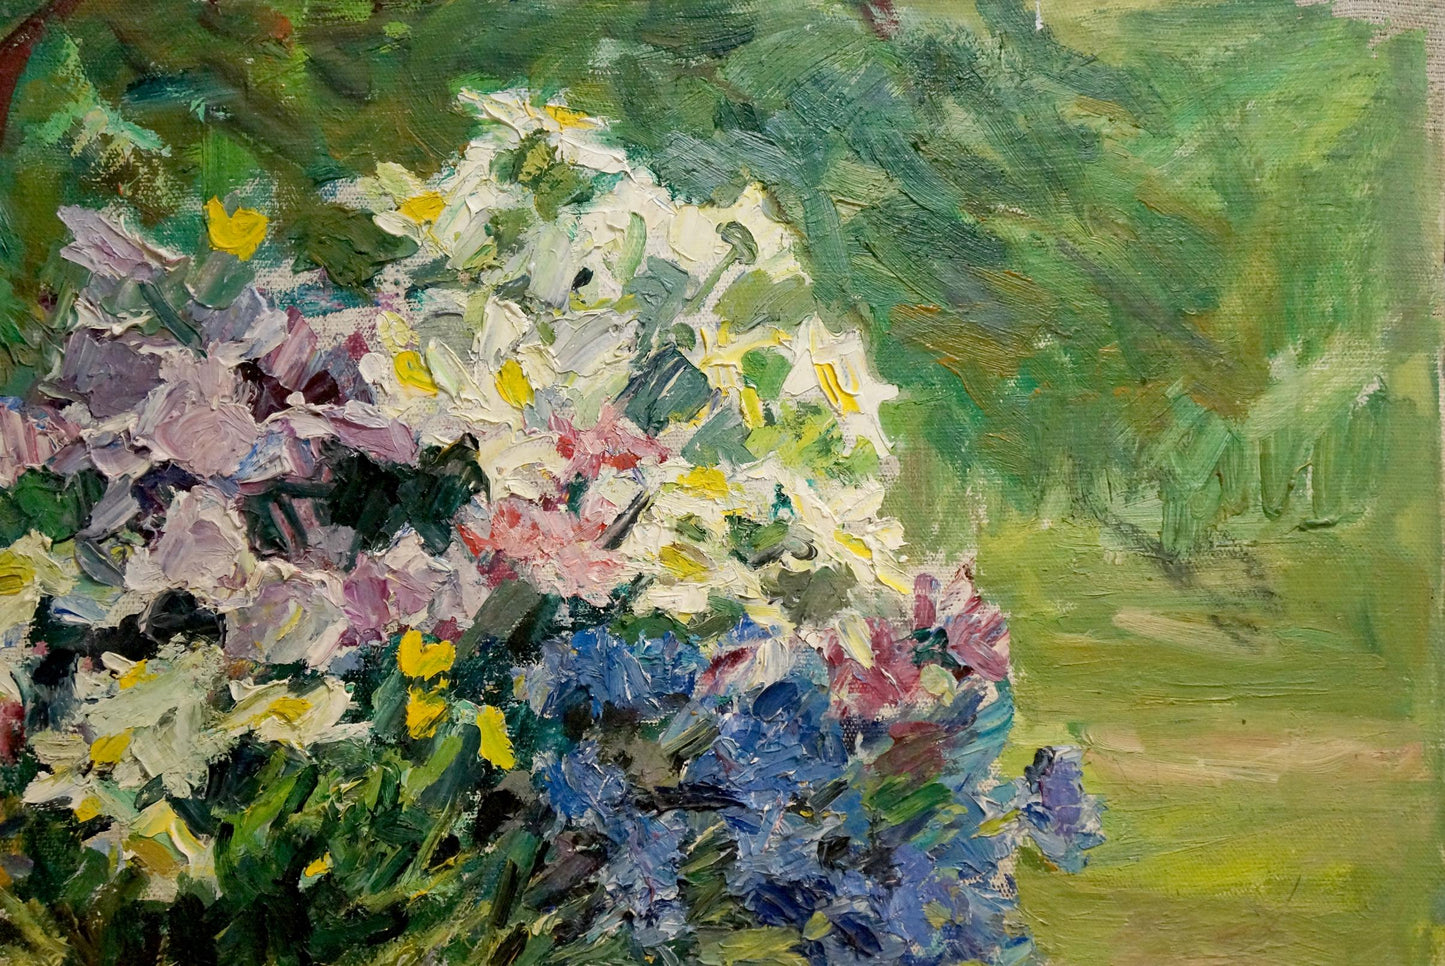 Oil painting Sokolova Zinaida Ivanovna Flowers and fruits nearby